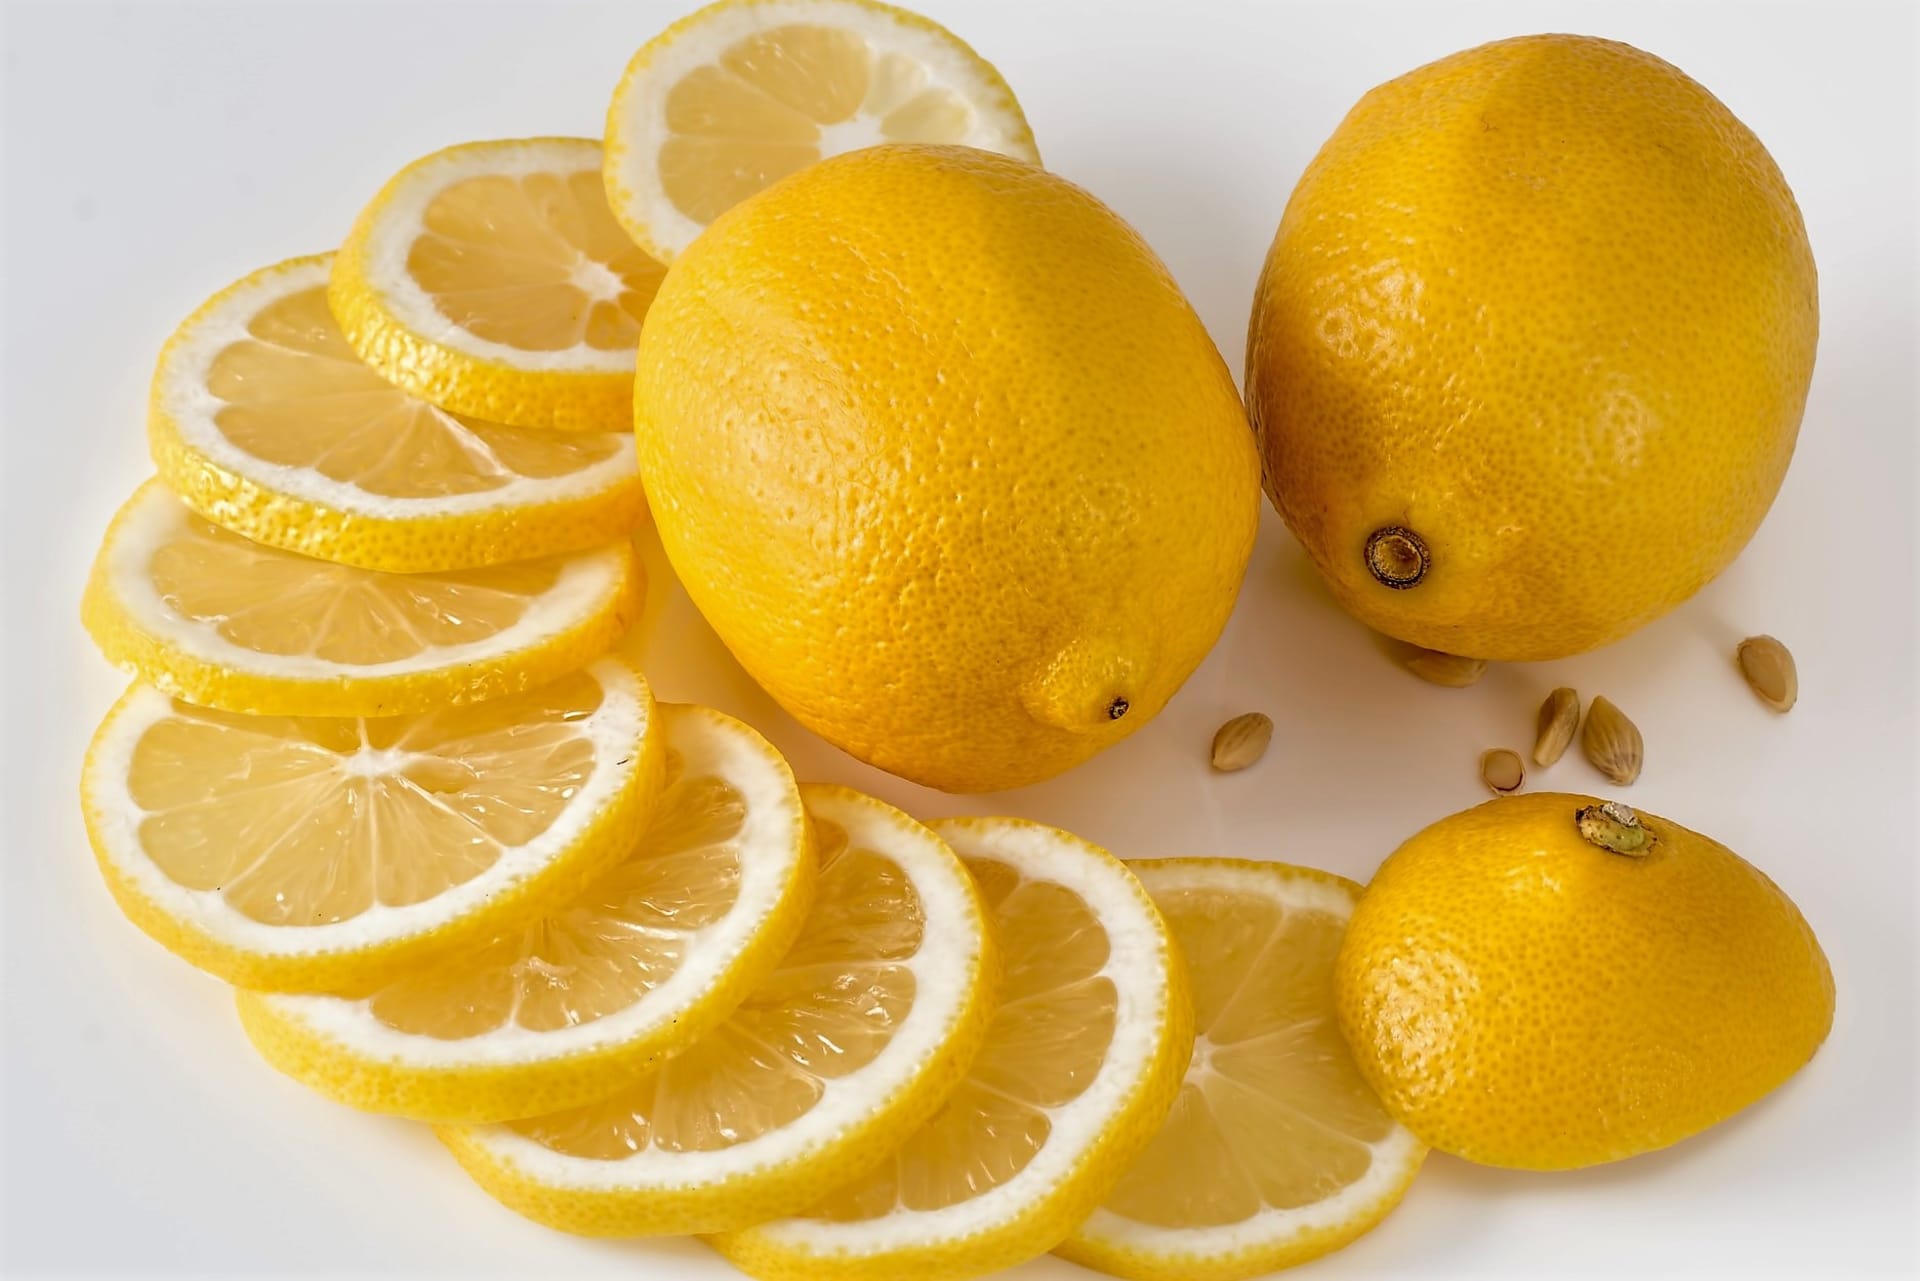 Nápoje lásky: Svěží a lehké aroma citronu působí povznášejícím dojmem, pomáhá utišit obavy a starosti a „otevřít srdce”. Navozuje pocit důvěry a uvolnění, a tak povzbuzuje k milostným hrám.